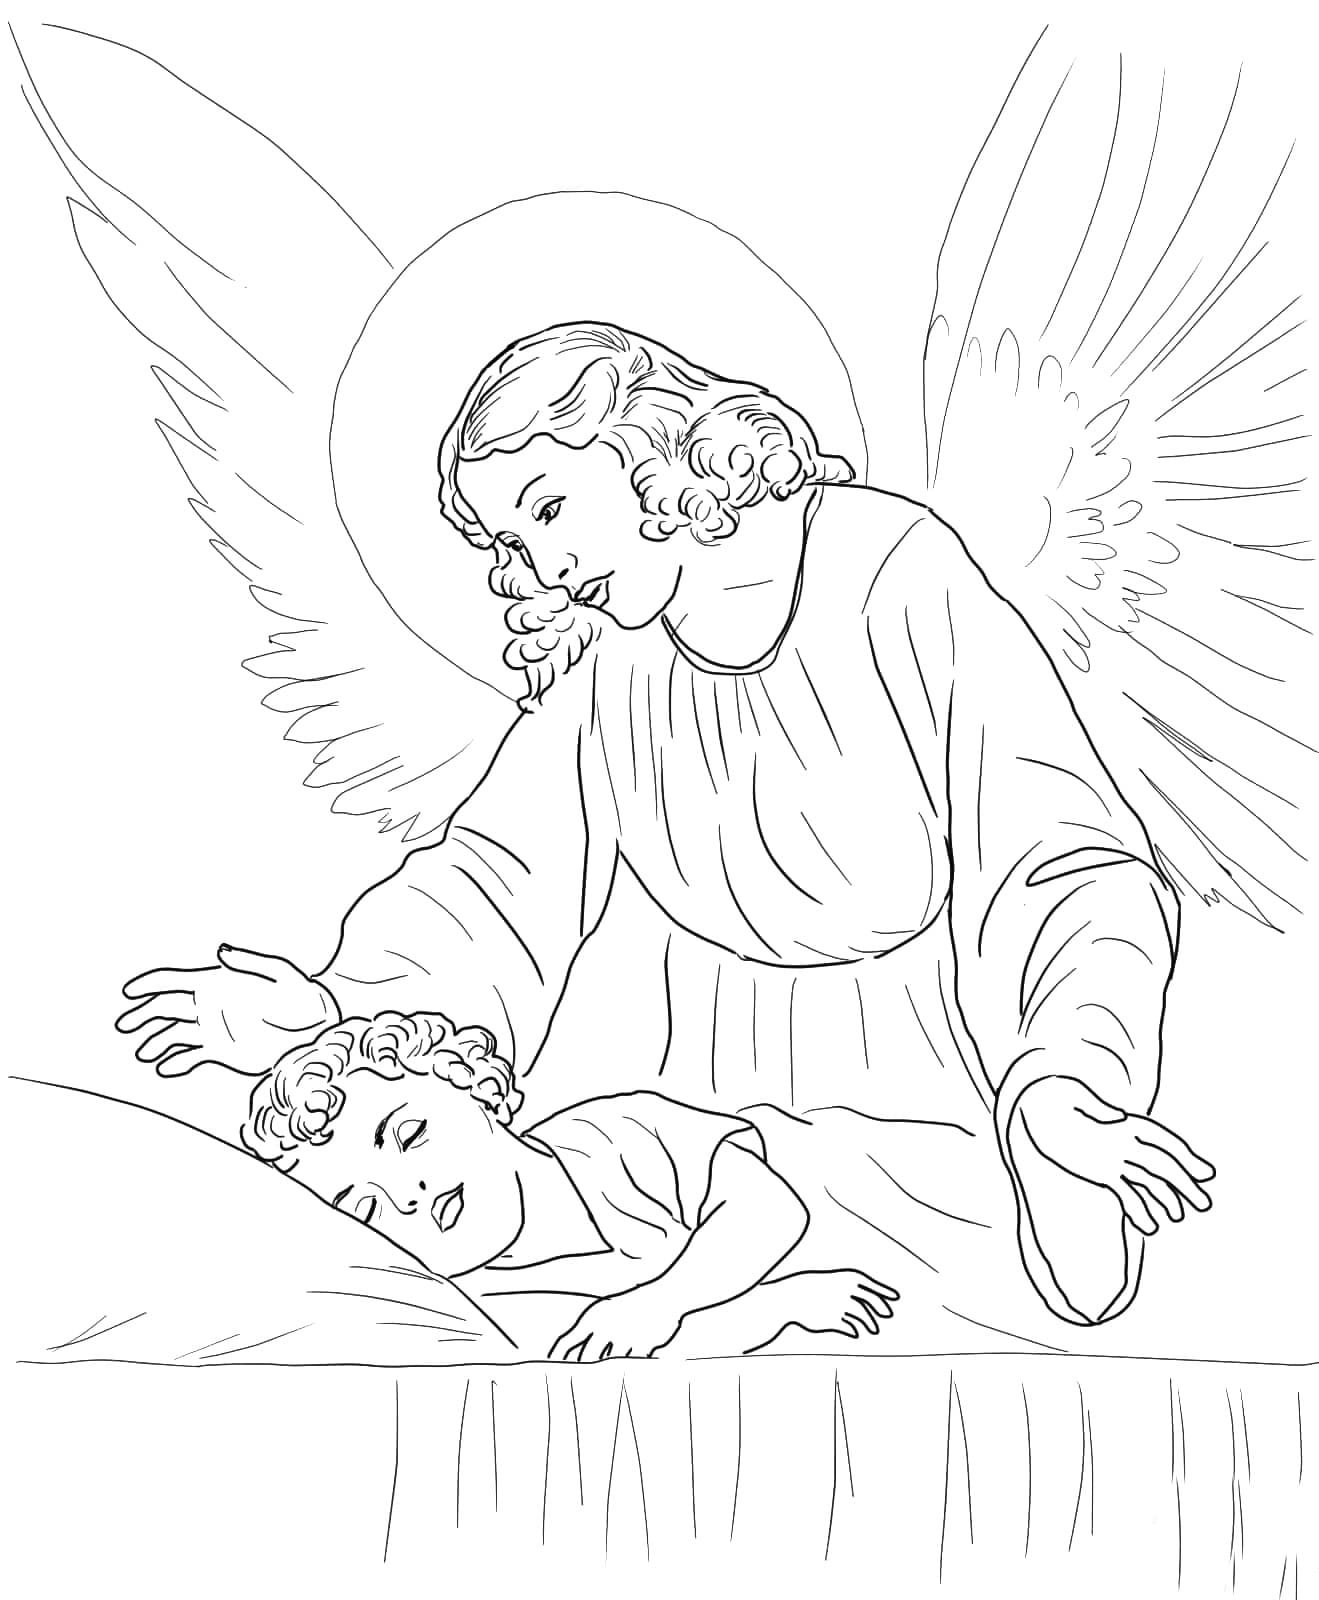 Православный ангел раскраска